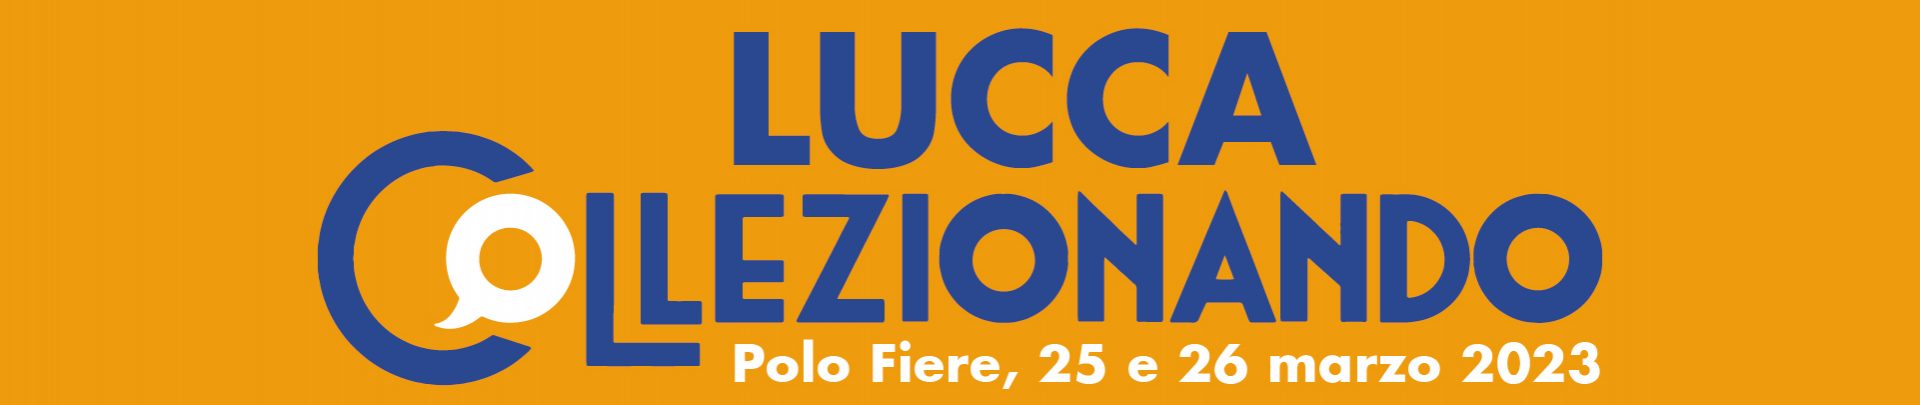 Lucca Collezionando torna nel 2022